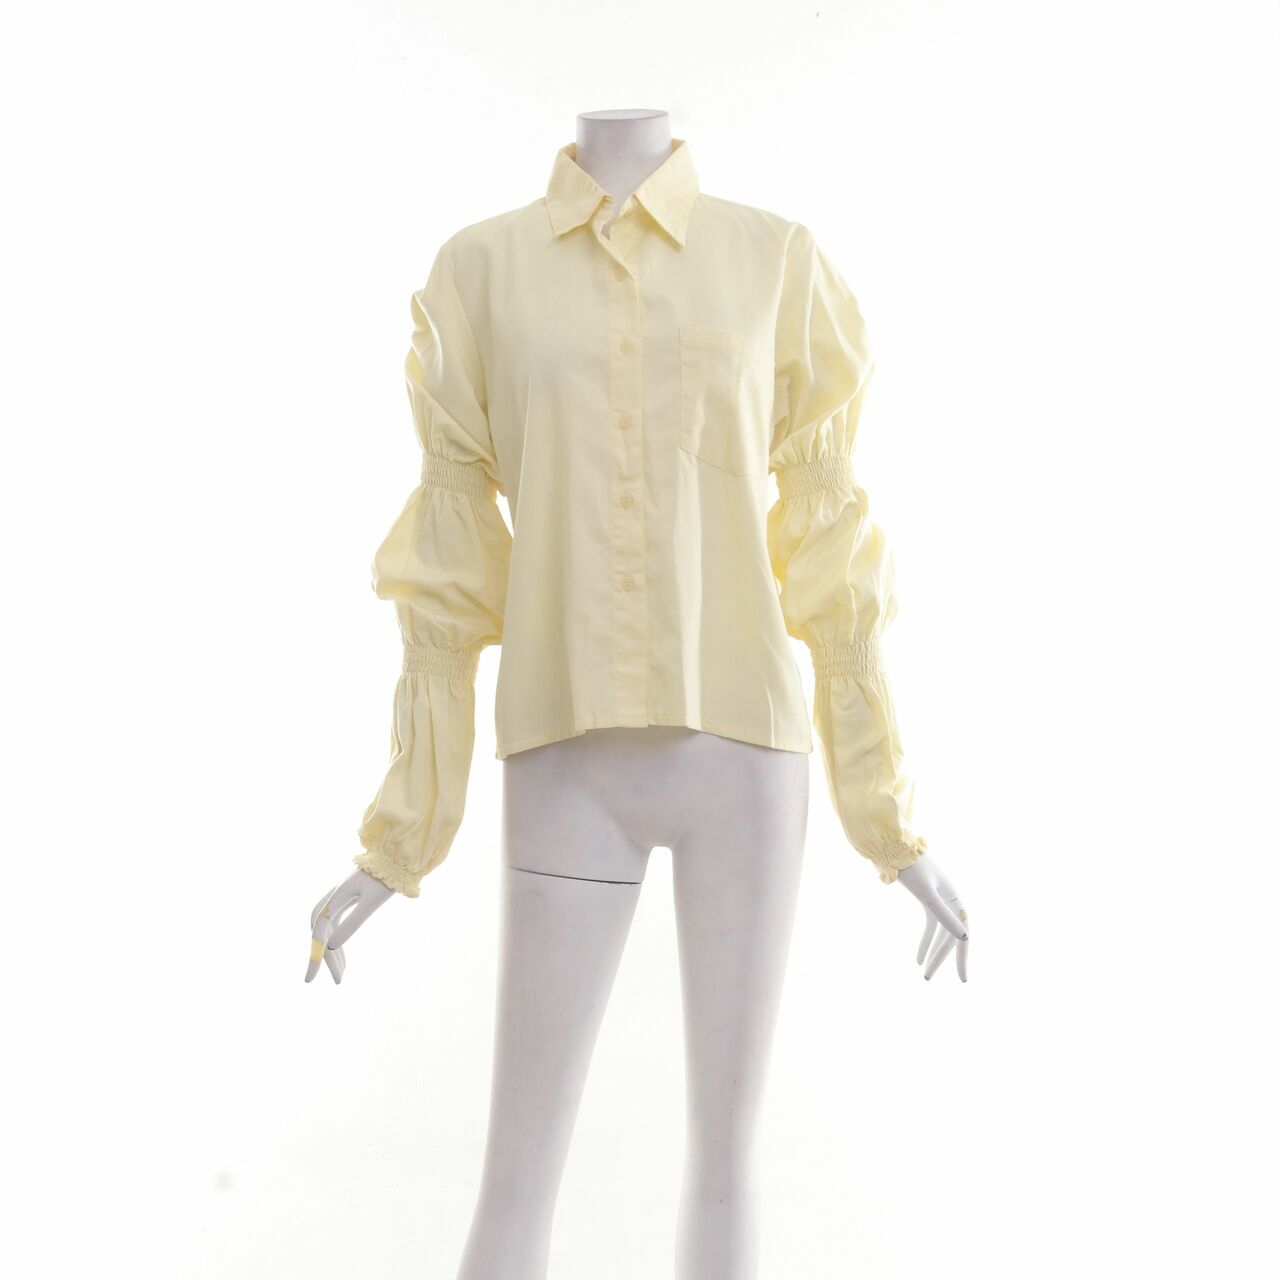 AVGAL Yellow Shirt